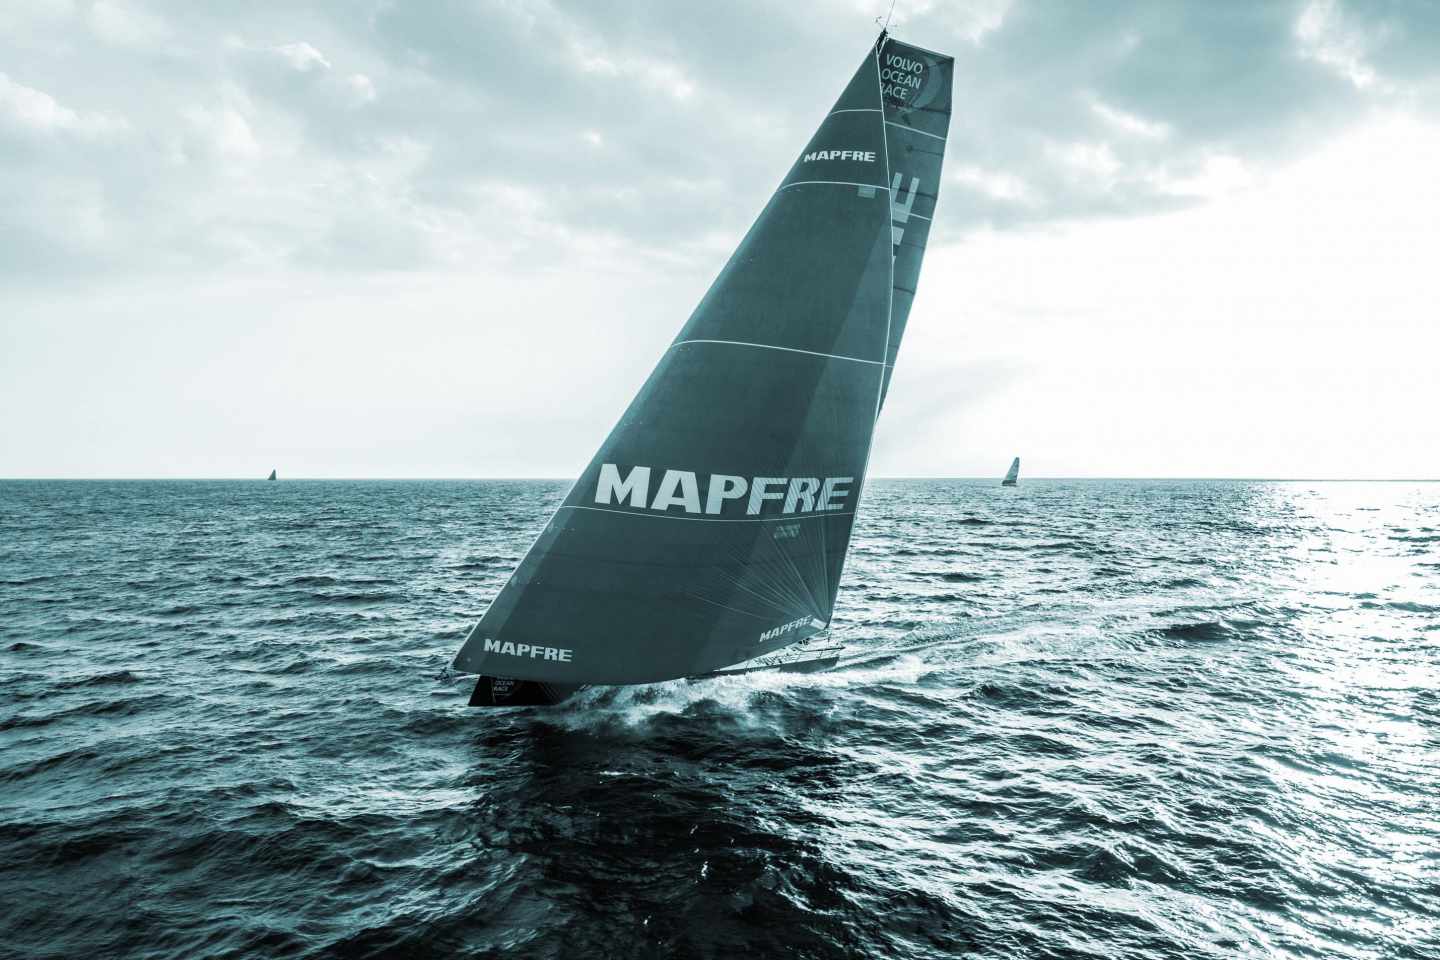 Velero patrocinado por Mapfre en una regata.